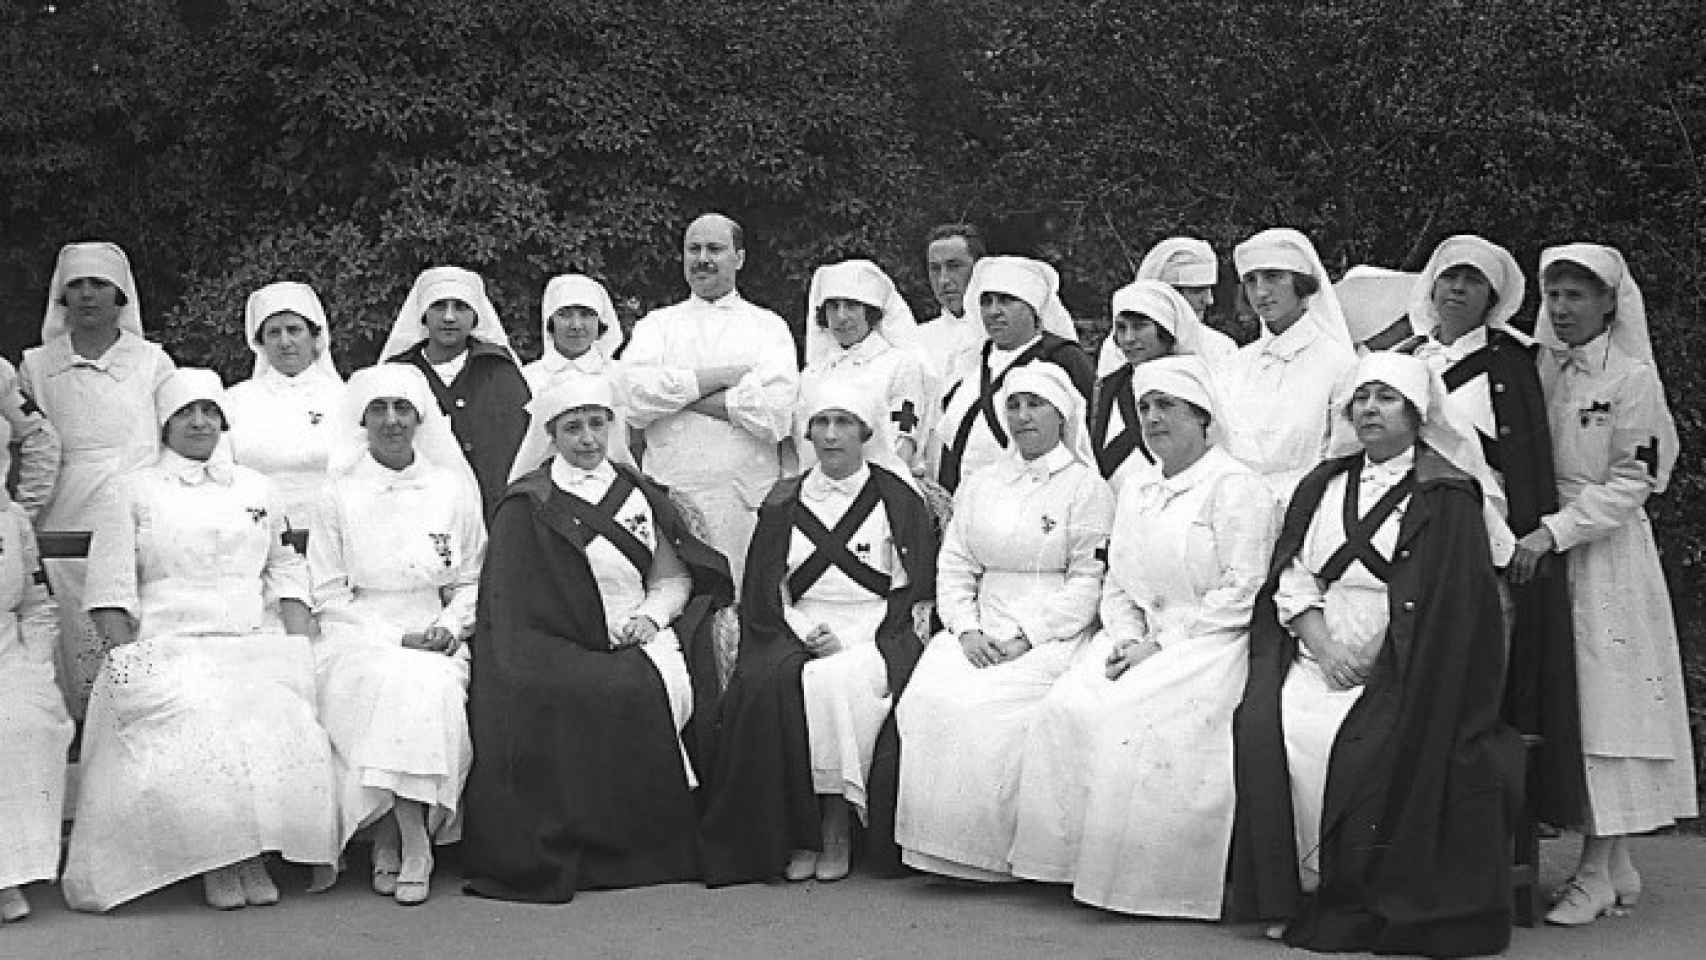 La Reina Victoria Eugenia con un grupo de enfermeras de la Campaña de Marruecos. Foto Archivos Estatales